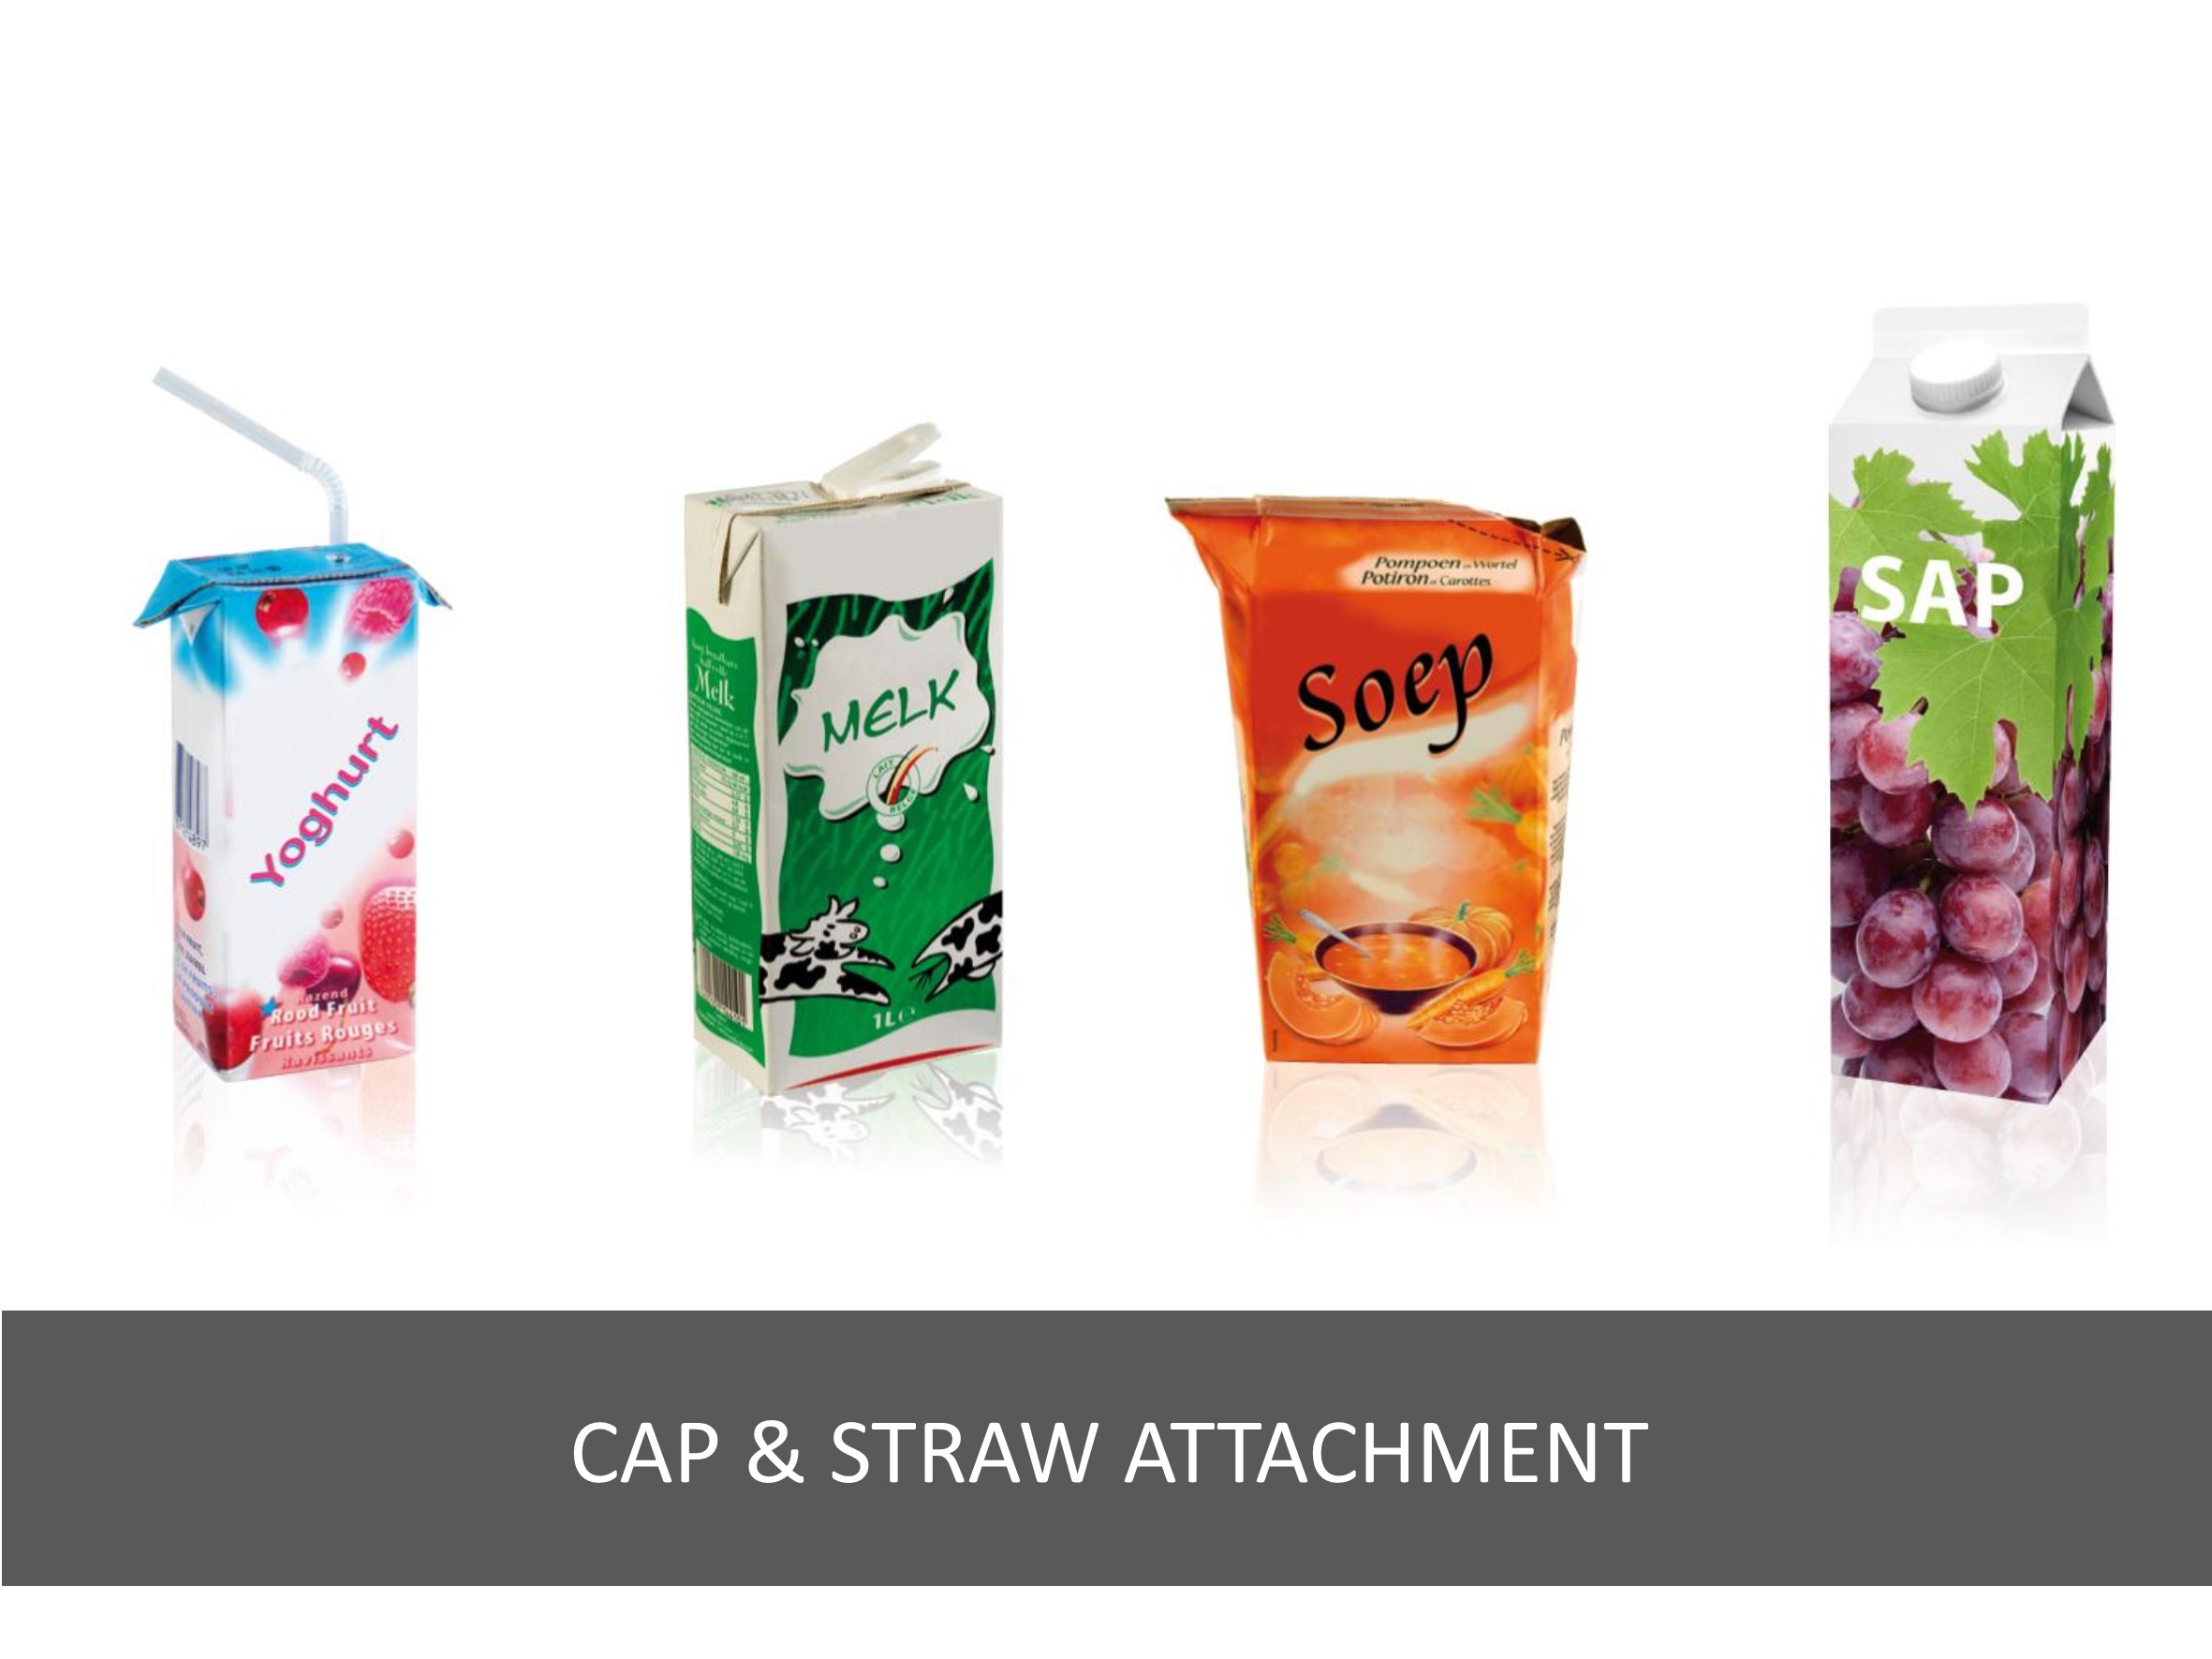 Cap & straw attachment